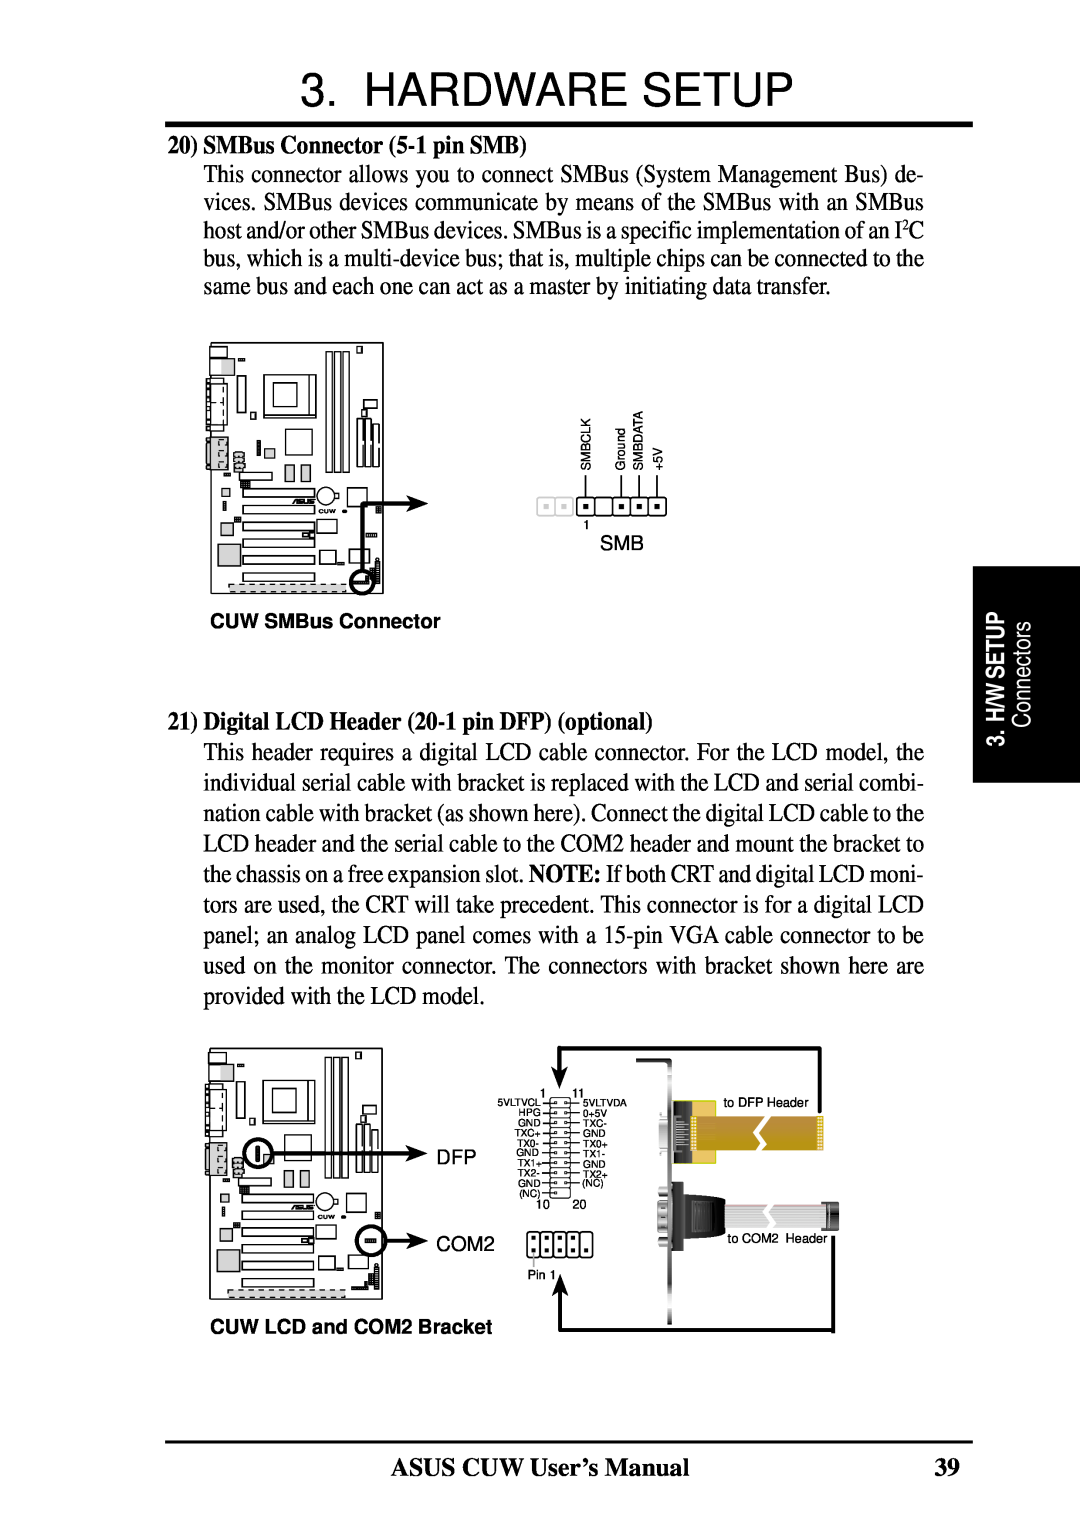 Asus 810 user manual SMBus Connector 5-1 pin SMB, Digital LCD Header 20-1 pin DFP optional, Hardware Setup, Connectors 